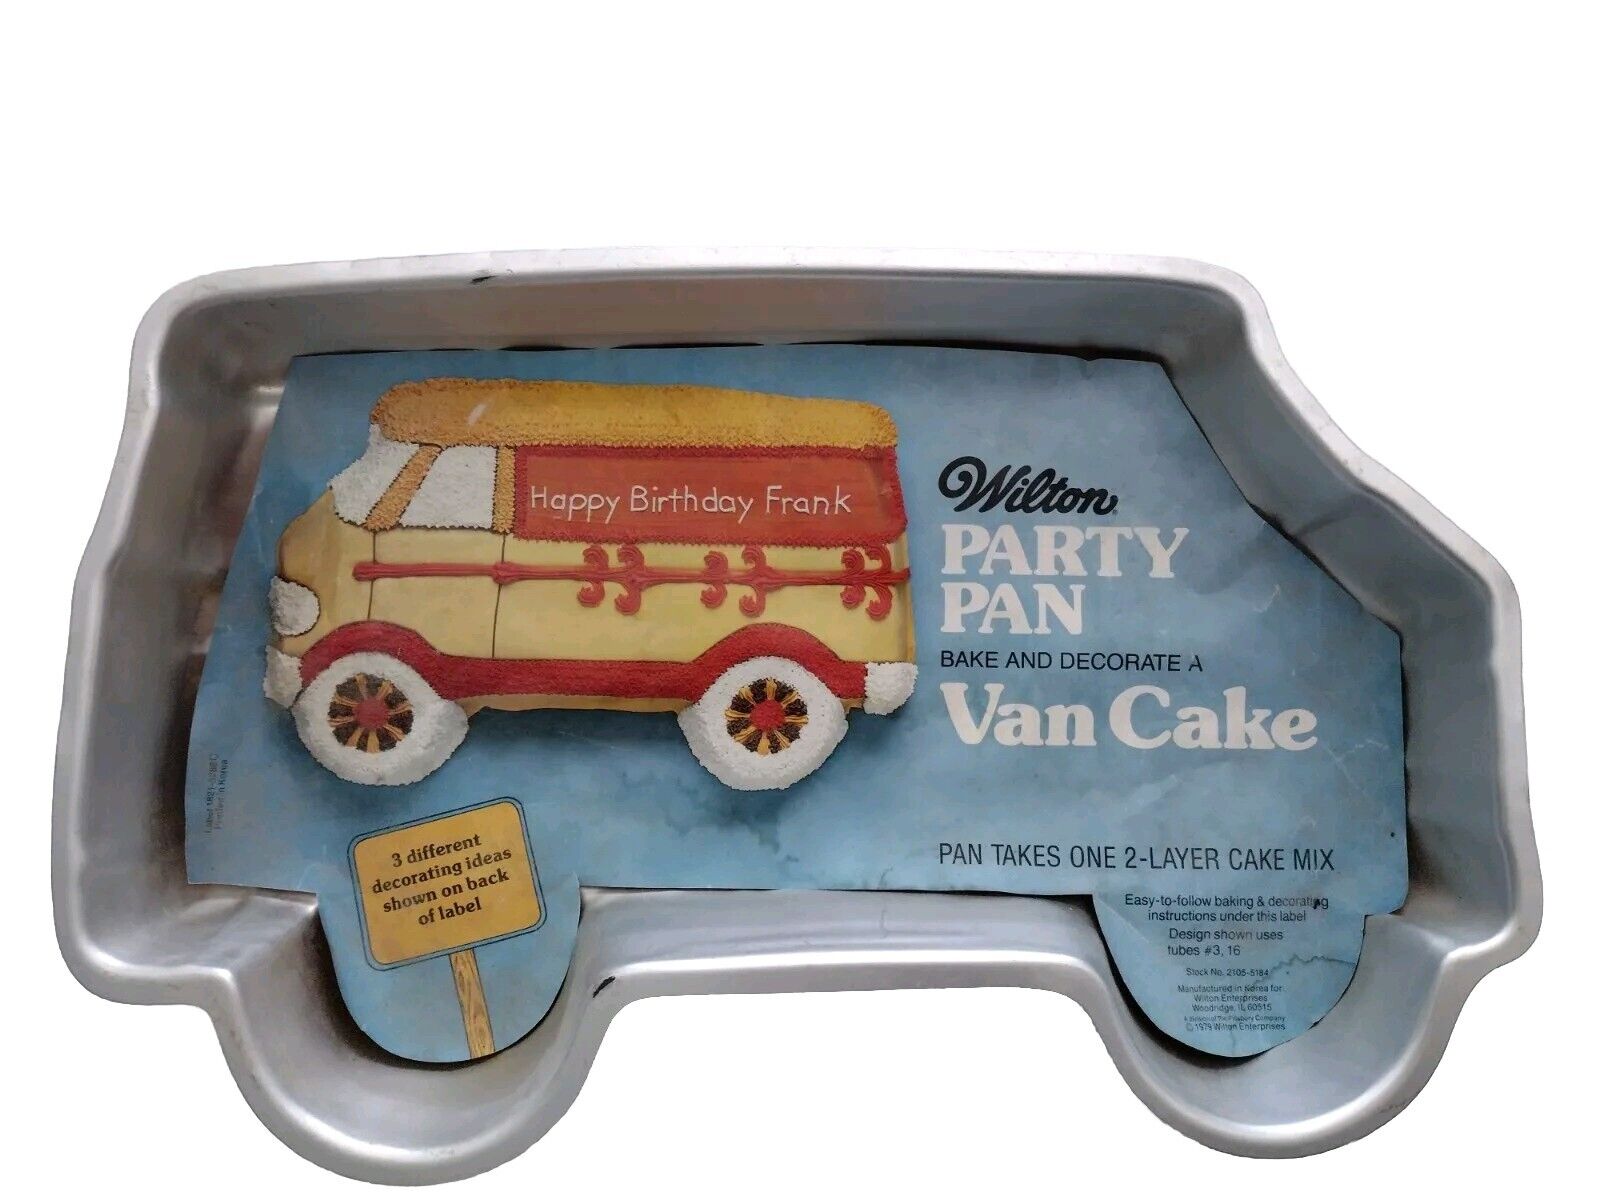 Rare Vintage 1978 Van Cake Wilton Party Pan Cake Pan 502-7652 Sheet